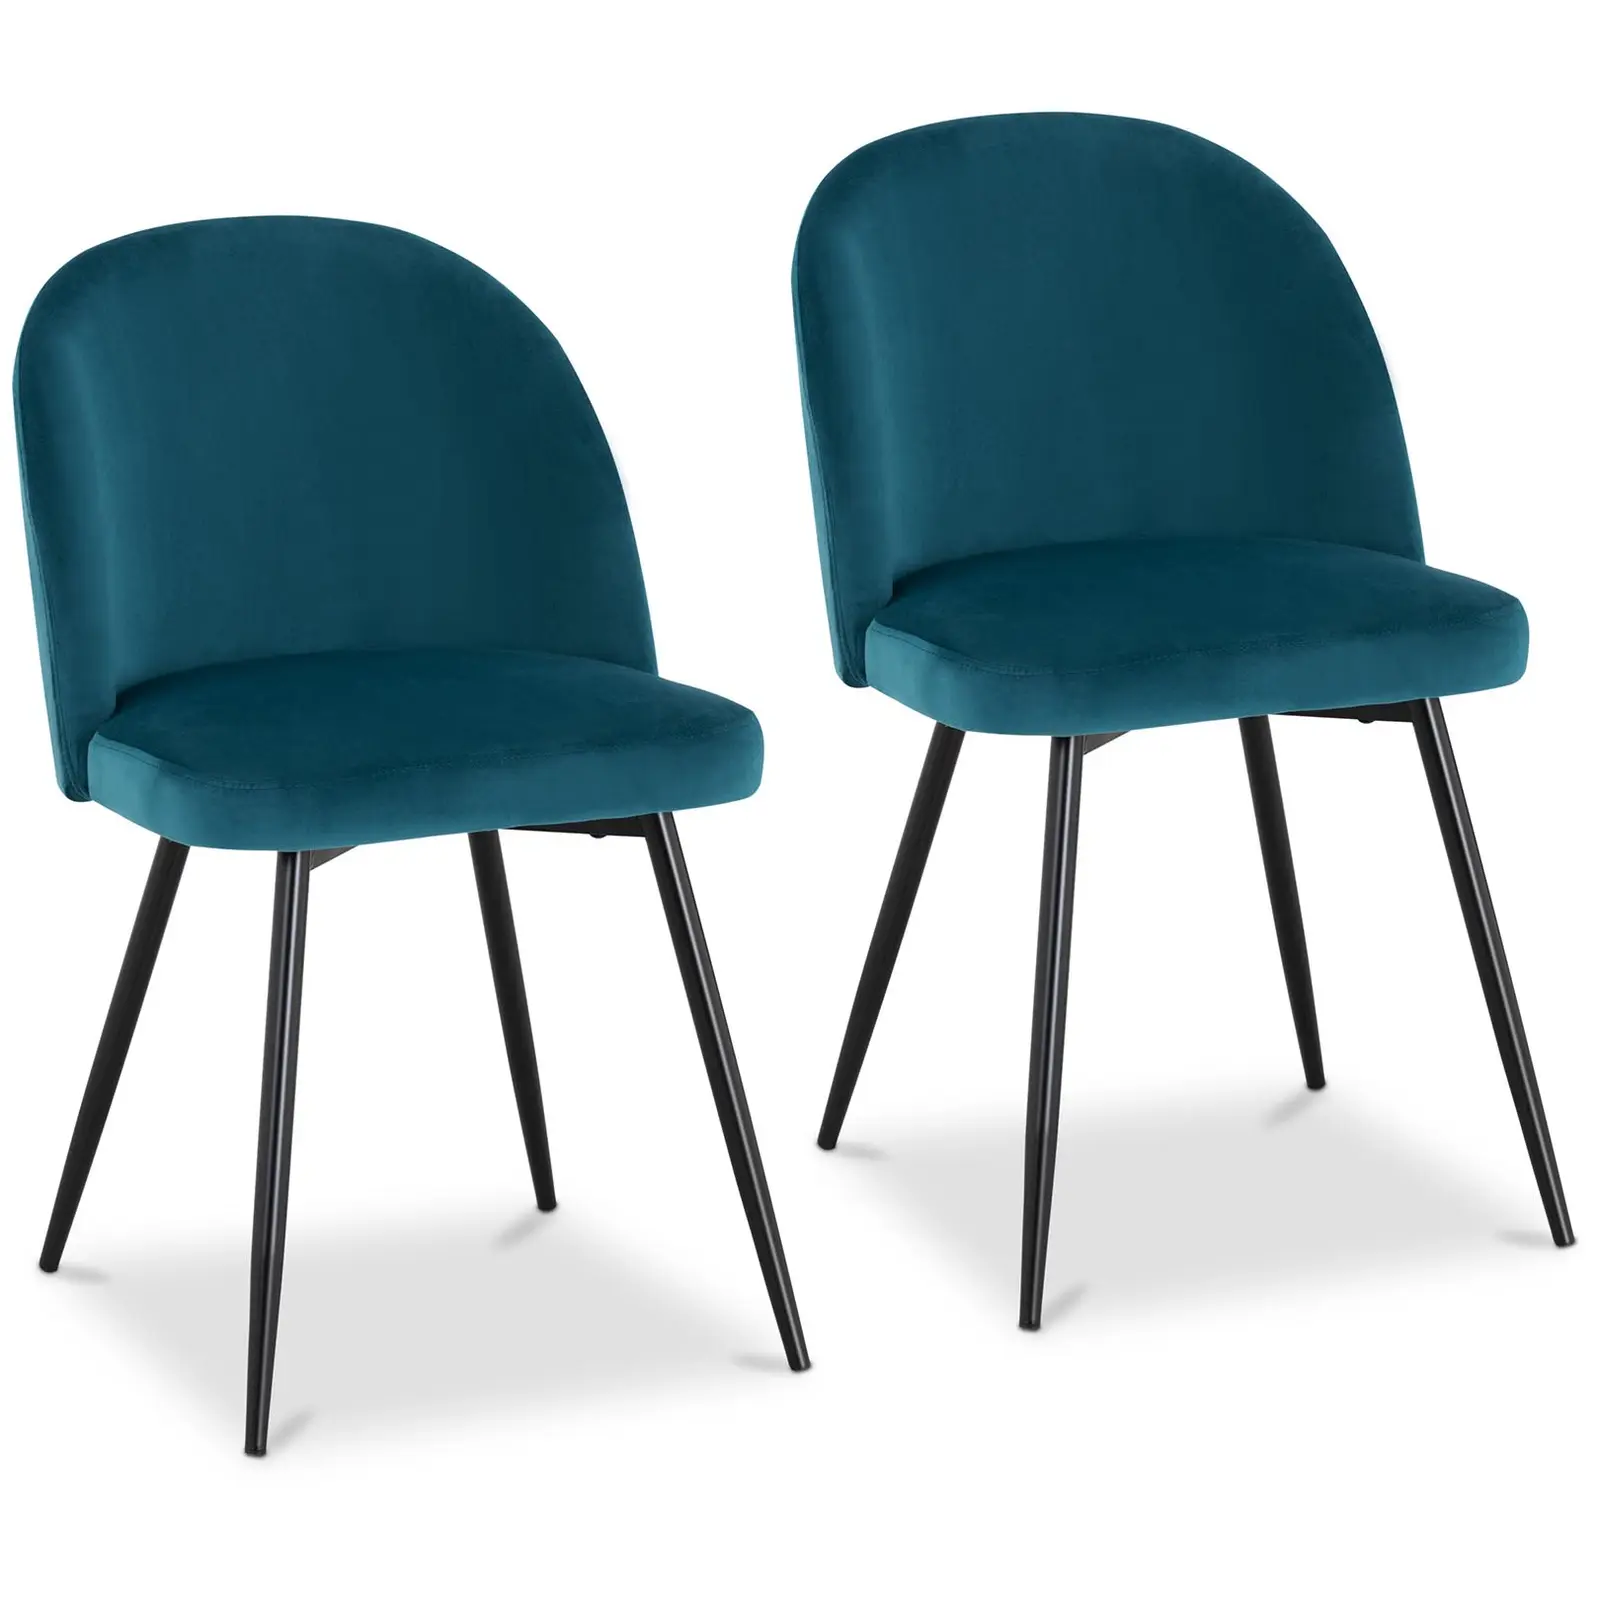 Produtos recondicionados Cadeira estofada - azul-turquesa - aveludada - 2 un.